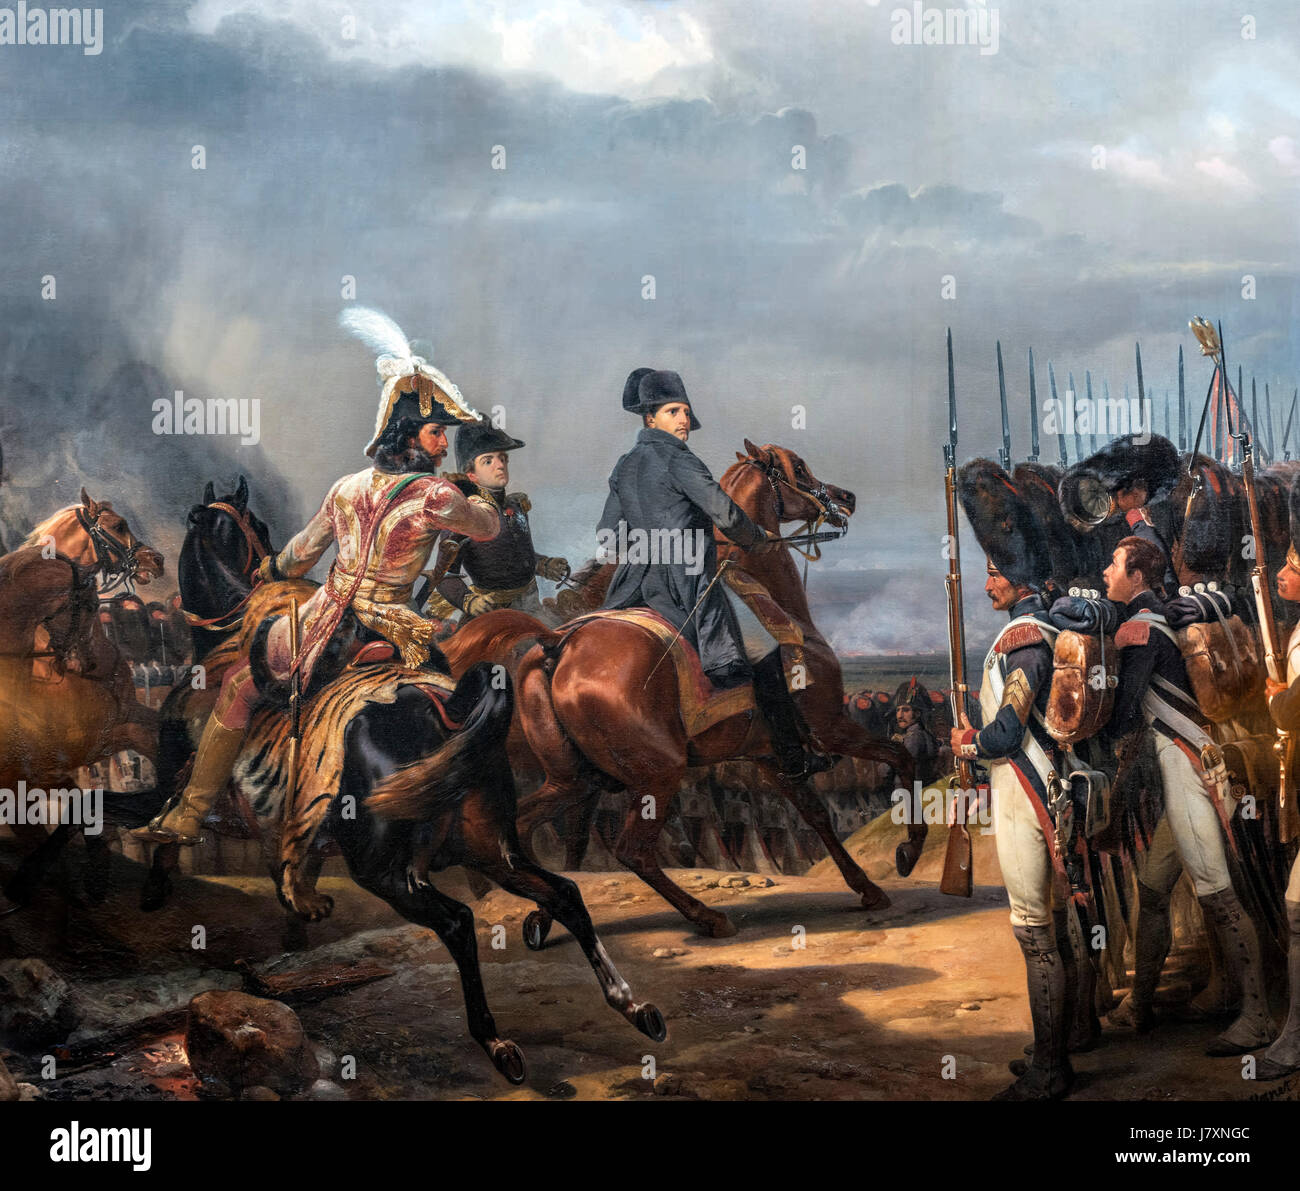 Napoleon Bonaparte Überprüfung der kaiserlichen Garde in der Schlacht von Jena-Auerstedt (Bataille d'Iena) am 14. Oktober 1806 von Horace Vernet, Öl auf Leinwand, 1836. Die Schlacht war die Niederlage der vierte Koalition in Tne Napoleonische Kriege. Stockfoto